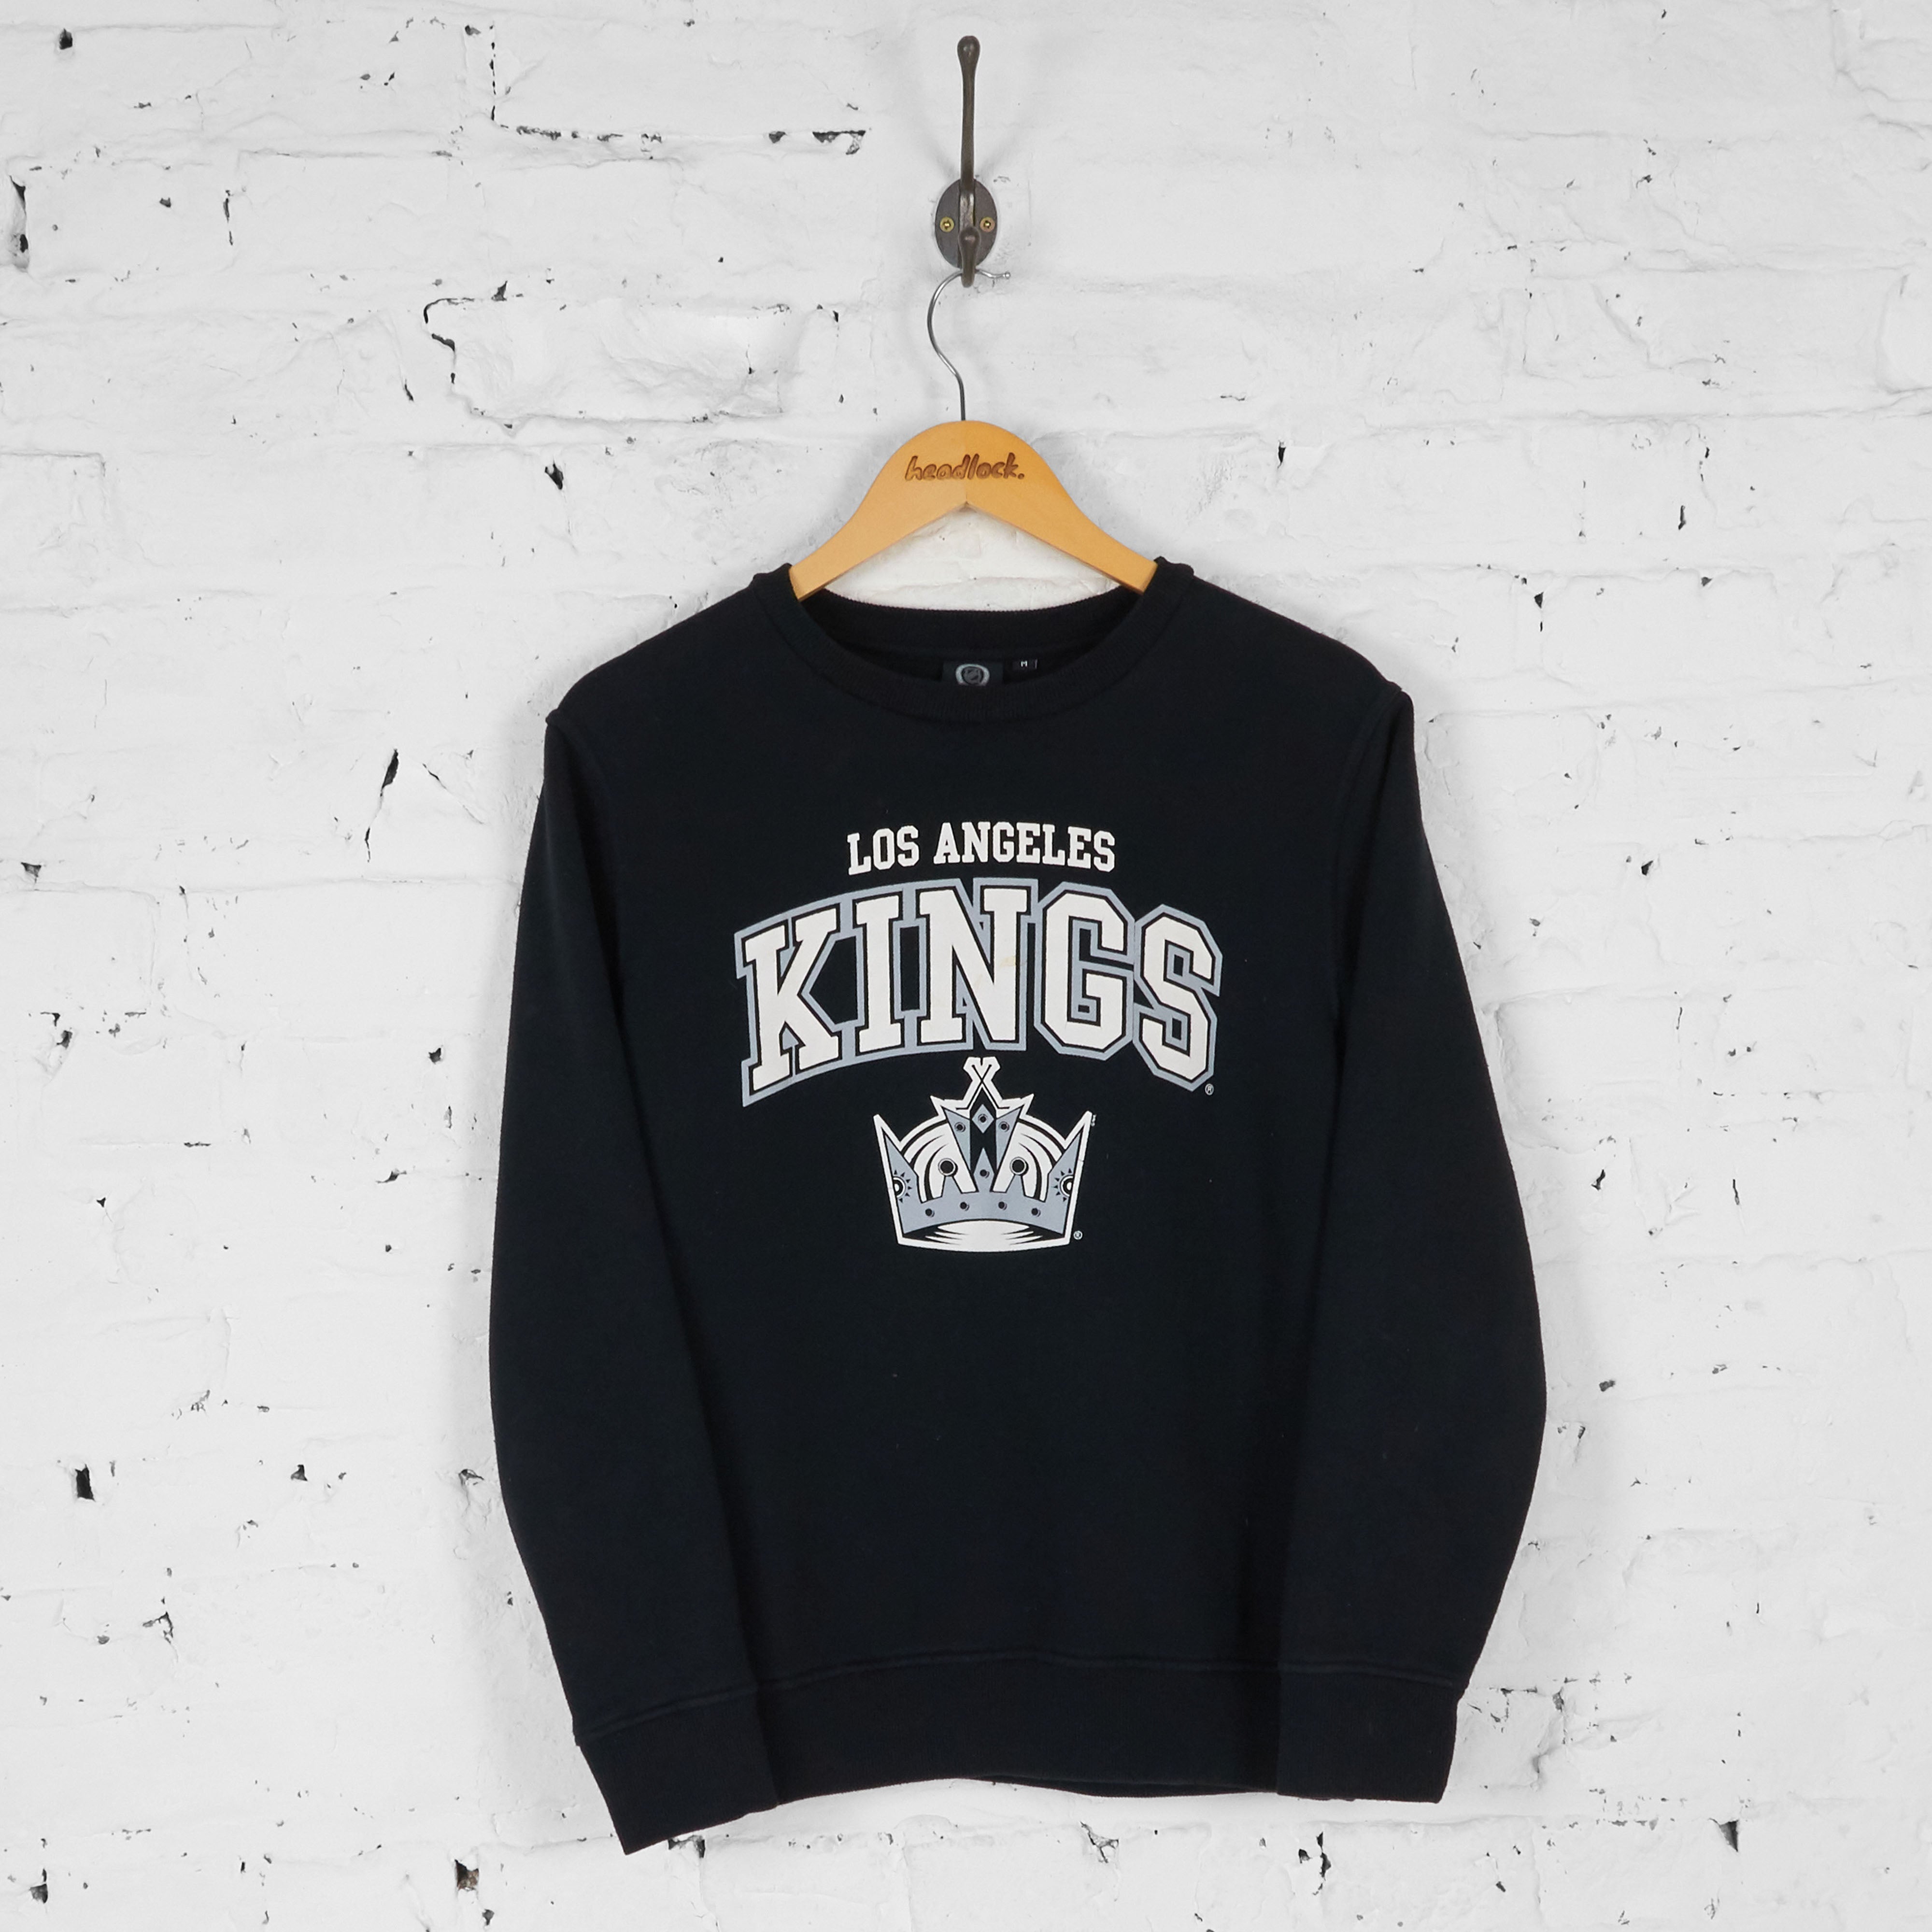 la kings hockey jersey for sale